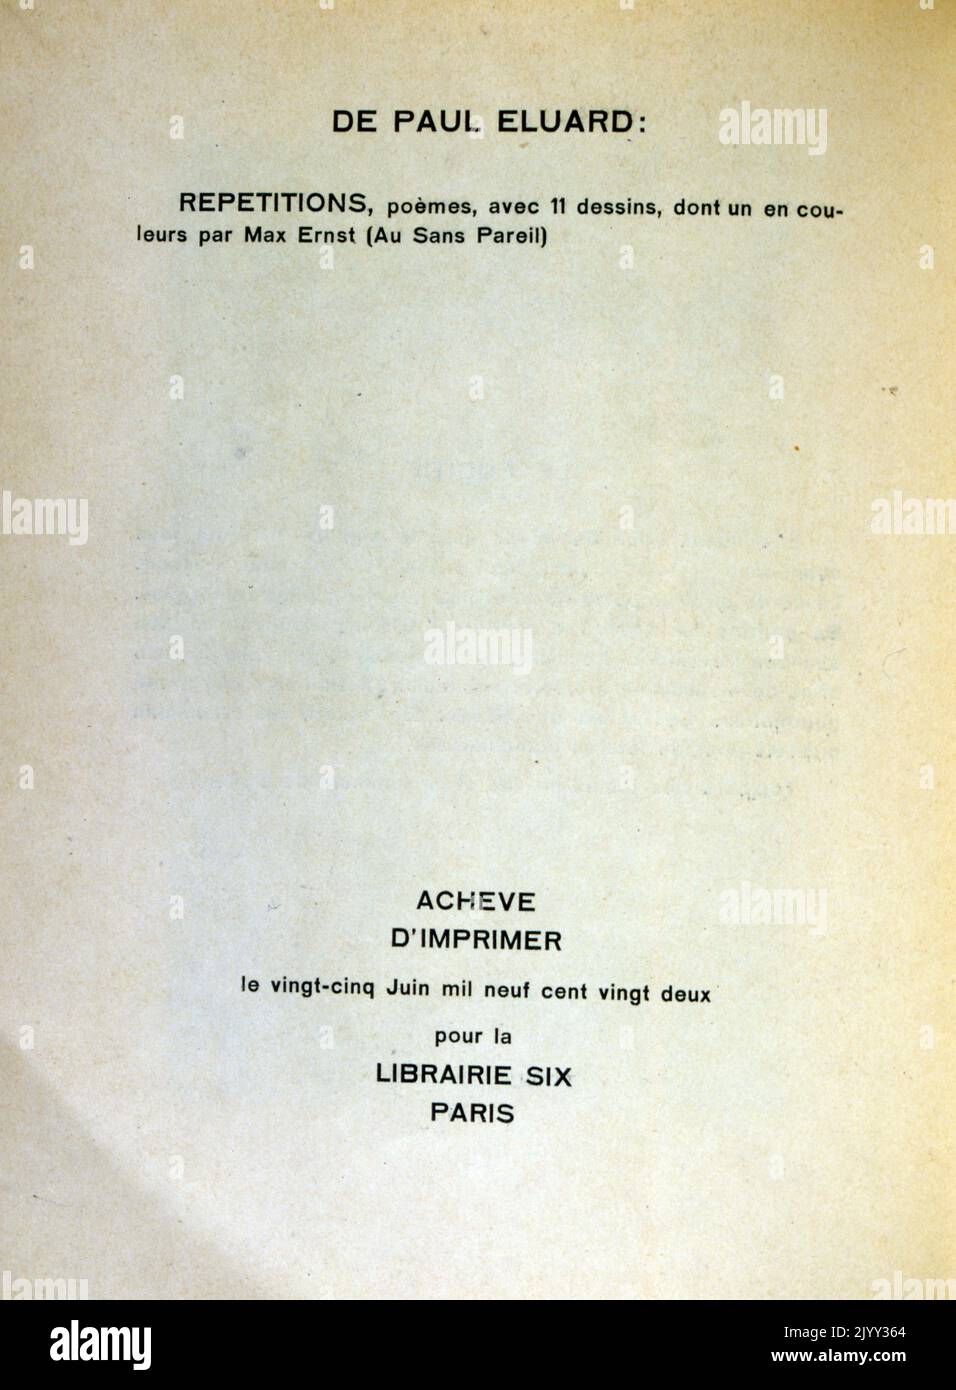 Pagina del titolo di 'Les malheurs des immortels' Reveles par Max Ernst et Paul Eluard. 1922; le disgrazie degli immortali rivelate da Max Ernst e Paul Eluard Foto Stock